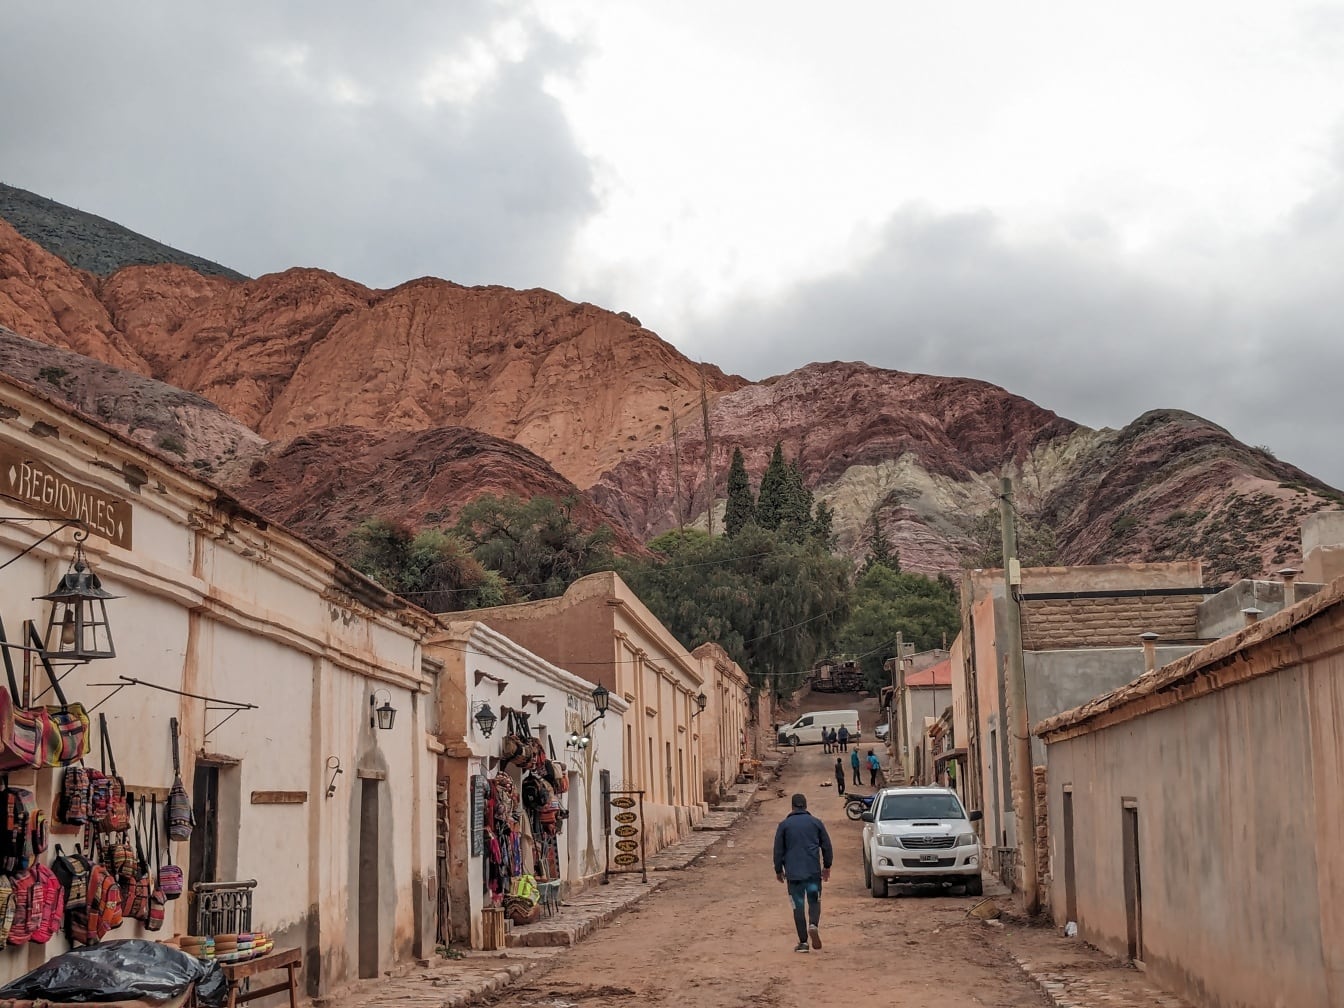 Kyläläinen kävelemässä maantietä pitkin Purmamarcan maaseutukylässä Andien vuoristolaaksossa Argentiinassa